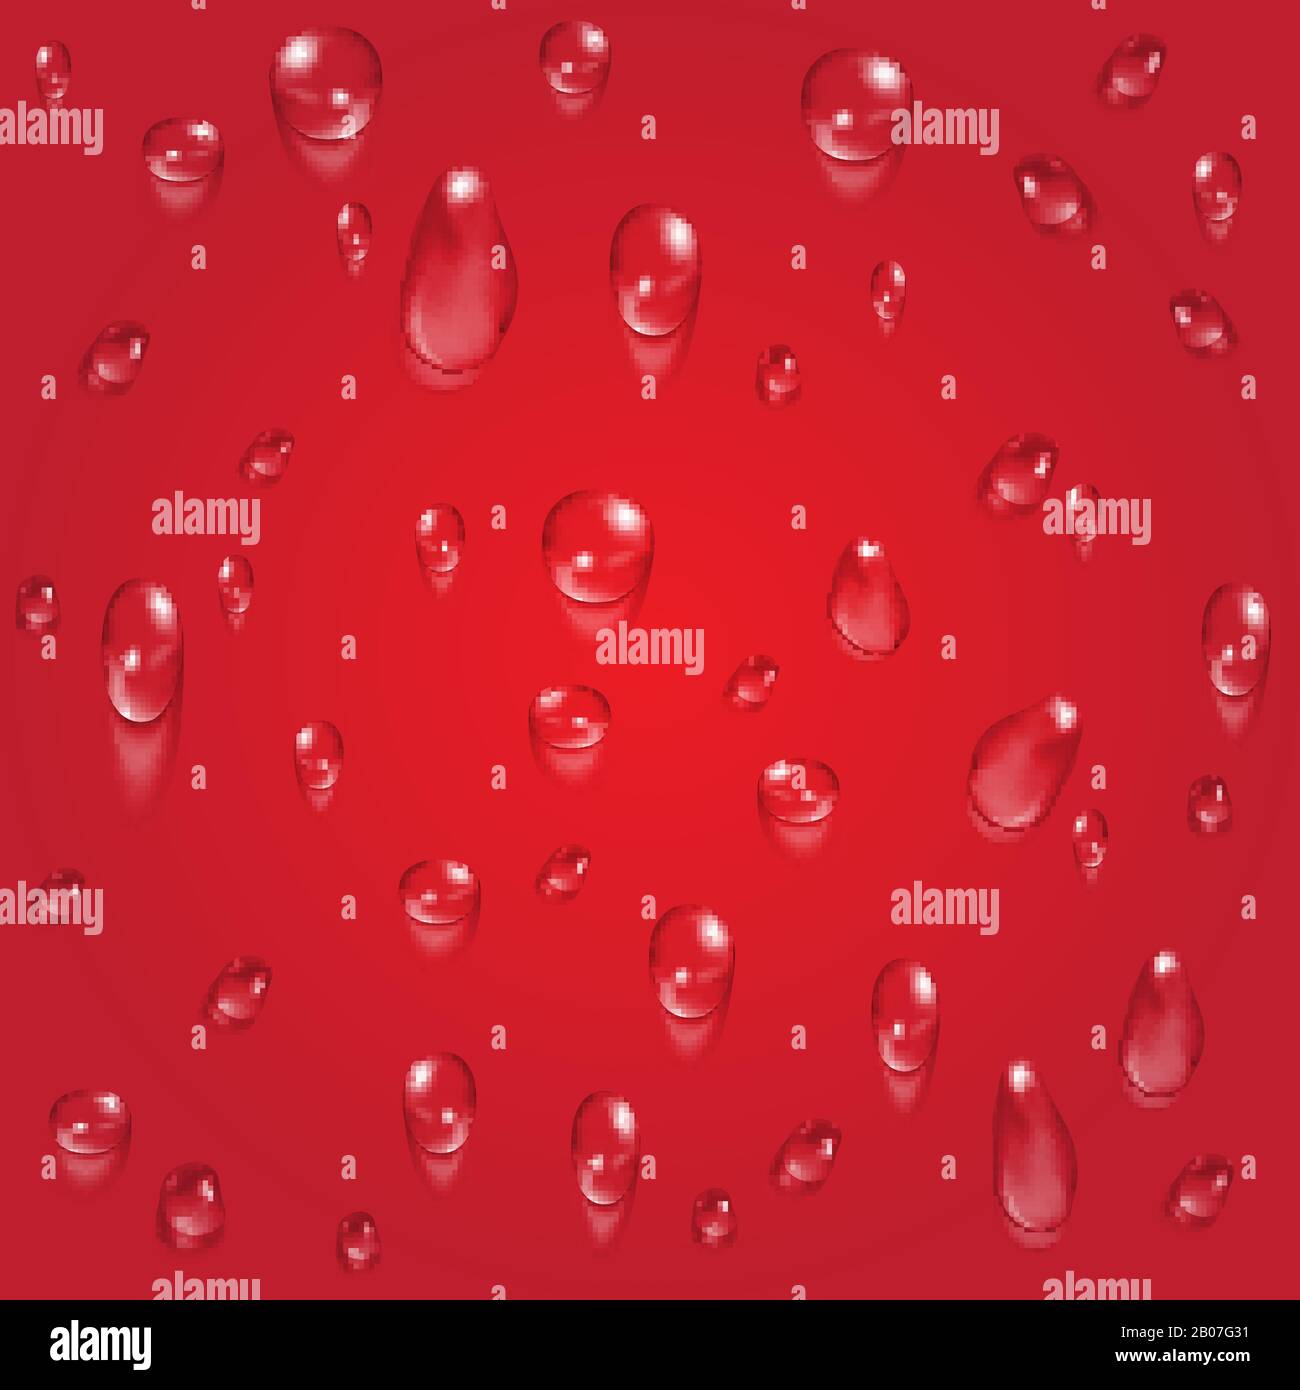 Helles rotes transparentes Wasser lässt den Vektorhintergrund fallen. Abbildung: Regentropfen Stock Vektor